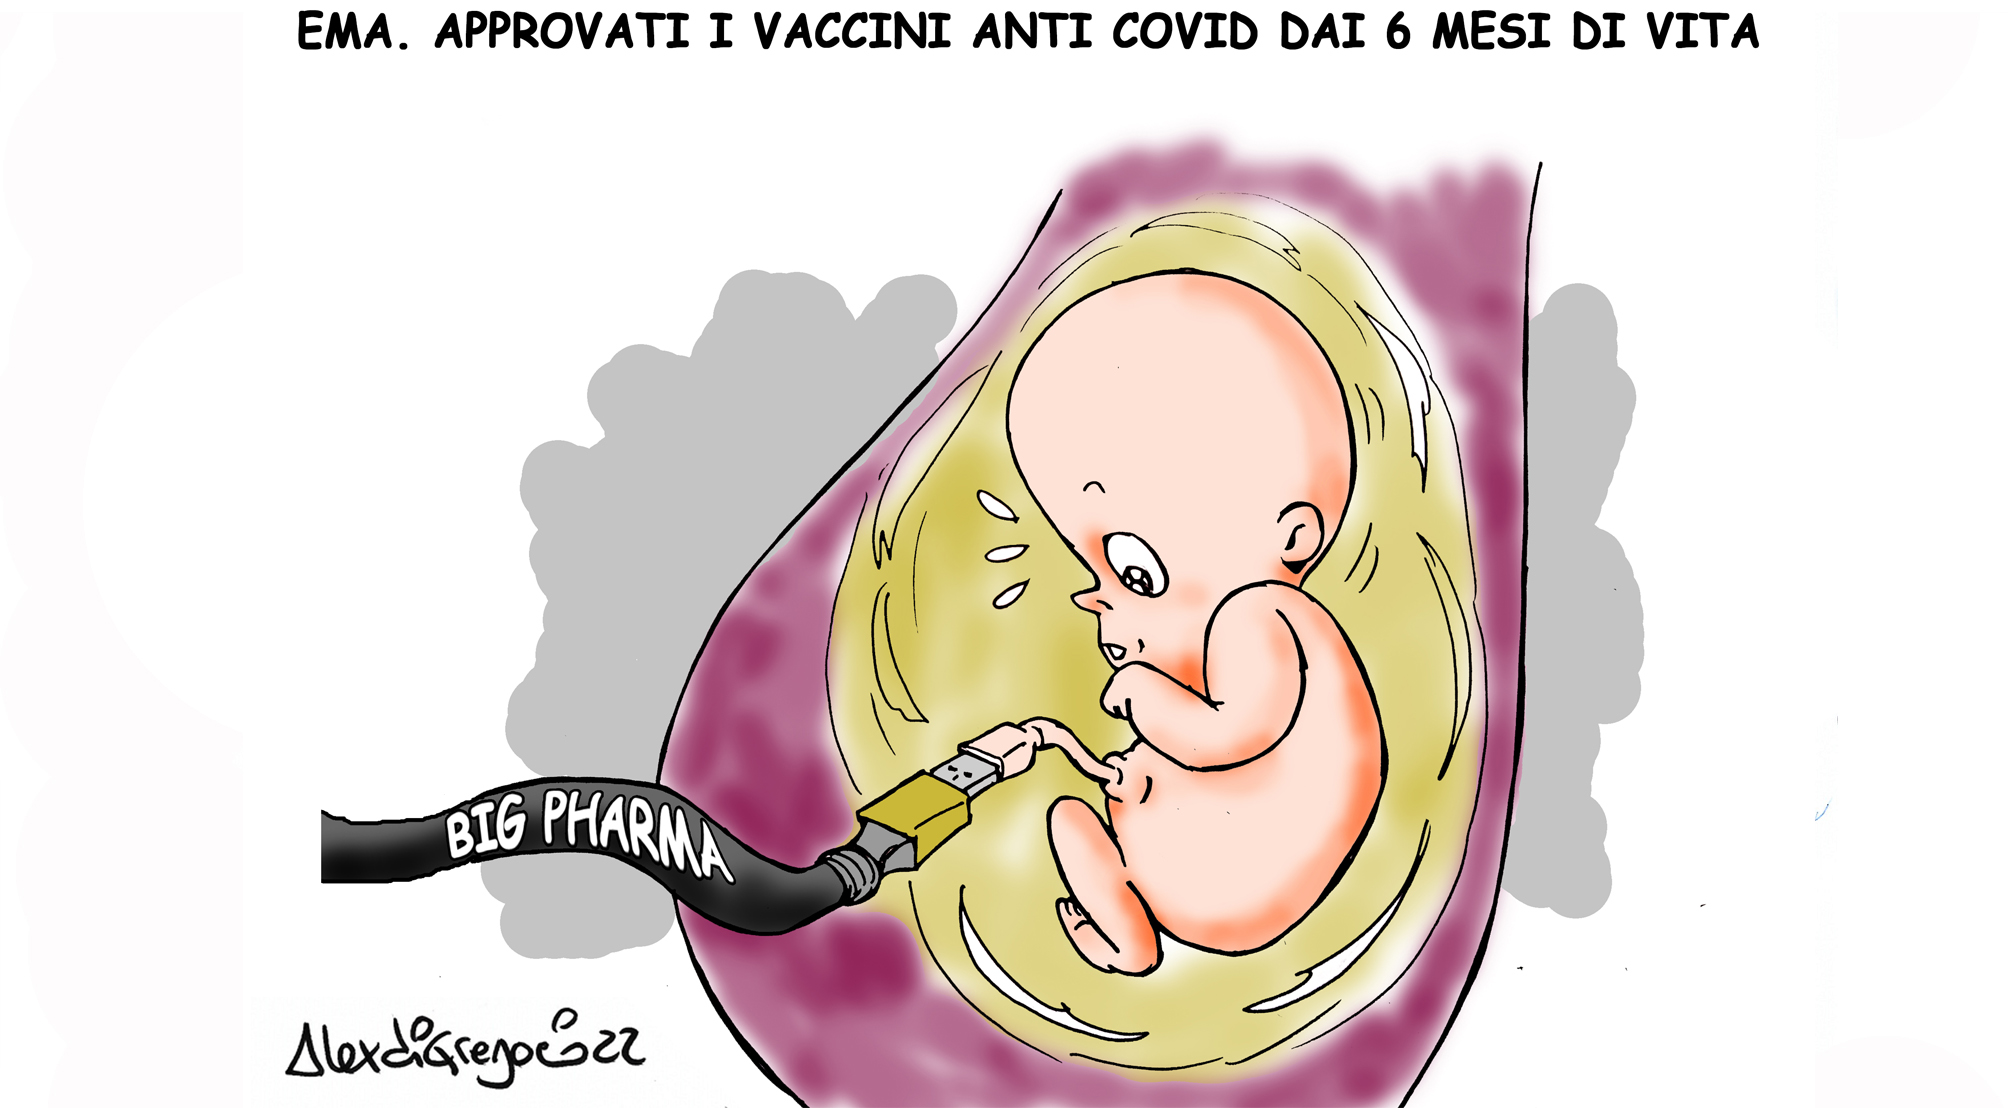 LA VIGNETTA di ALEX DI GREGORIO: “Ema, approvati i vaccini anti-Covid dai 6 mesi di vita”